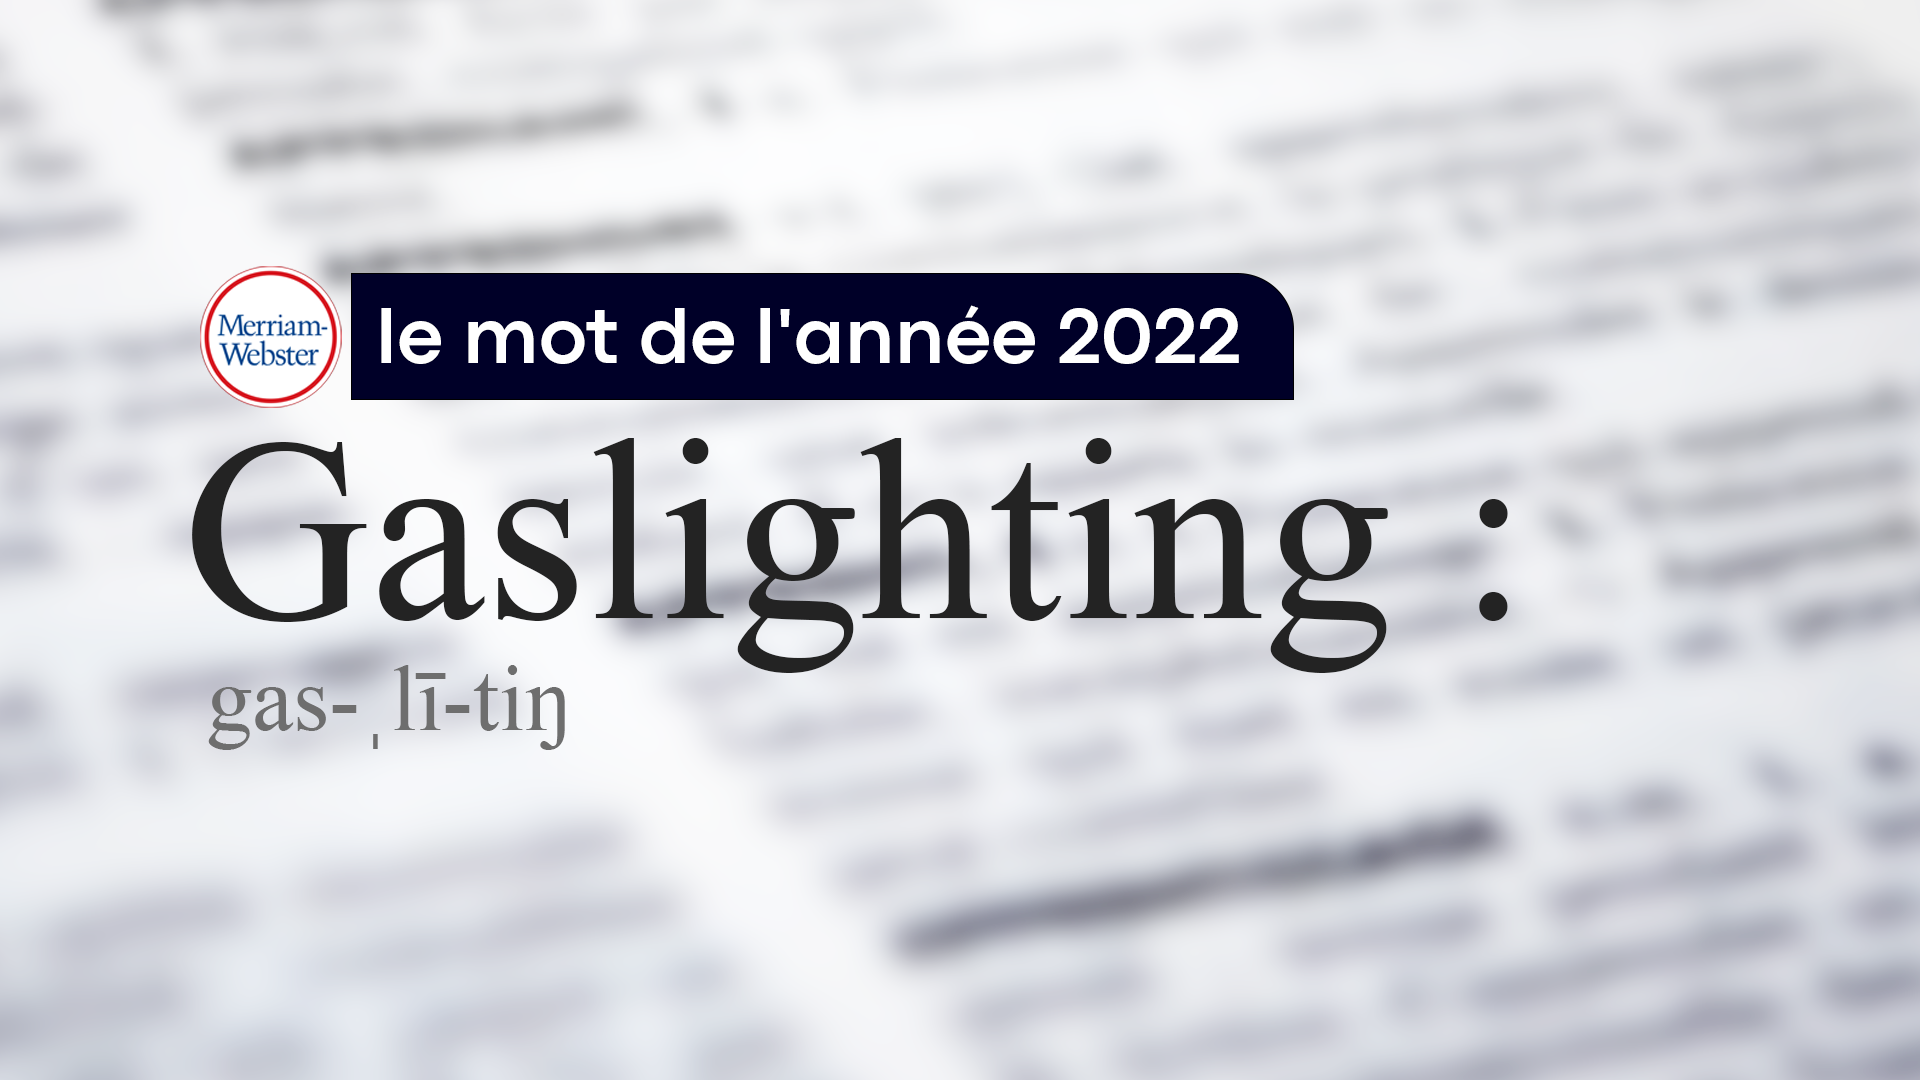 Le dictionnaire de référence américain Merriam-Webster a choisi le terme «gaslighting» comme mot de l'année 2022.